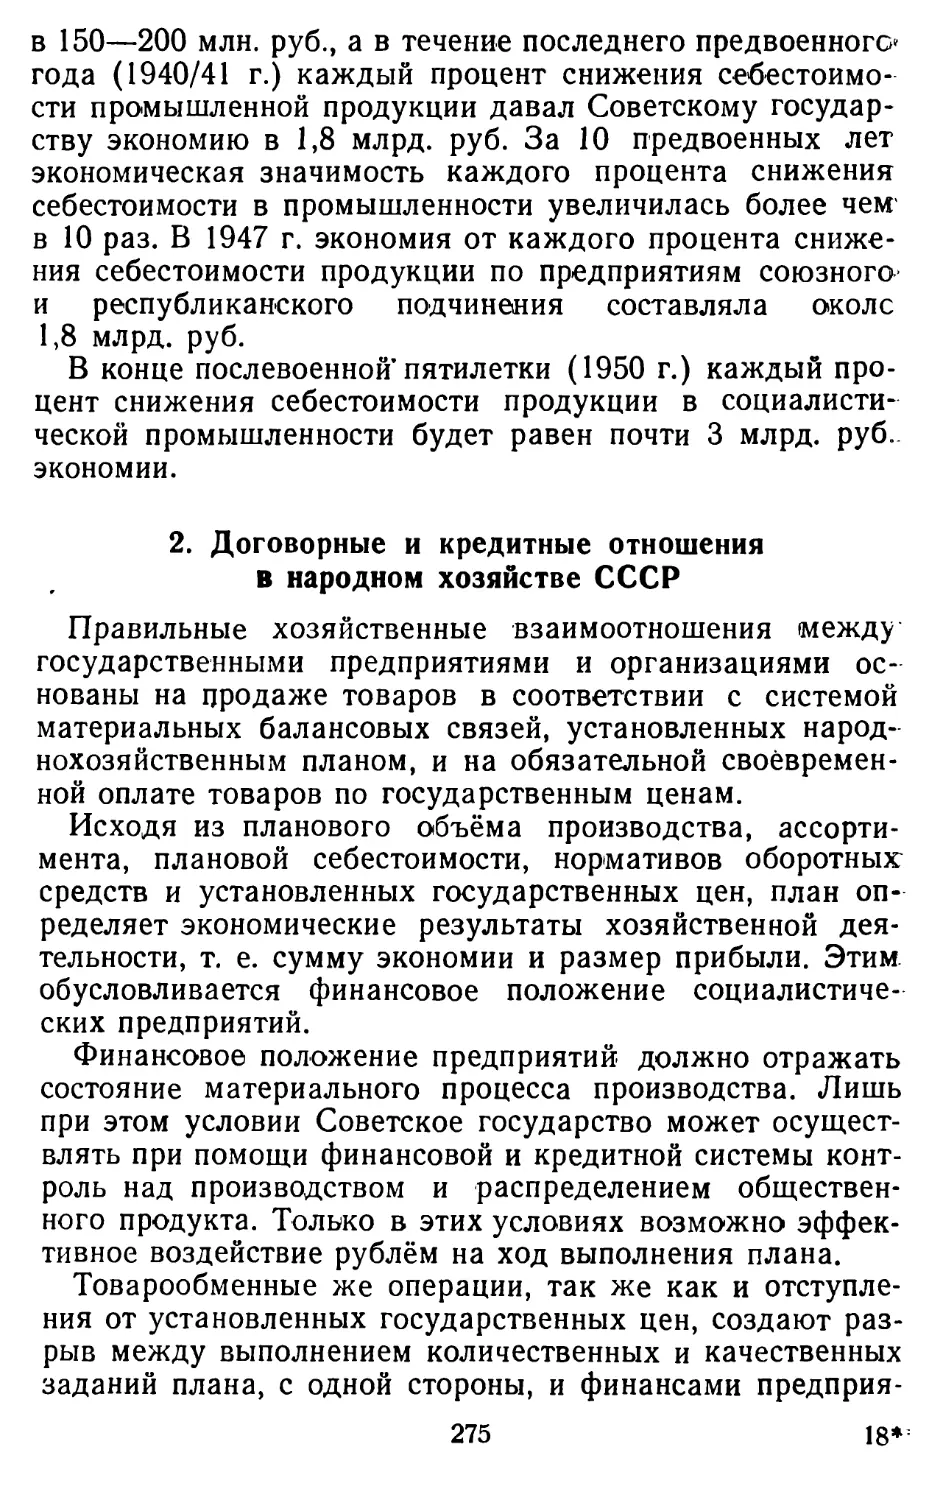 2. Договорные и кредитные отношения в народном хозяйстве СССР